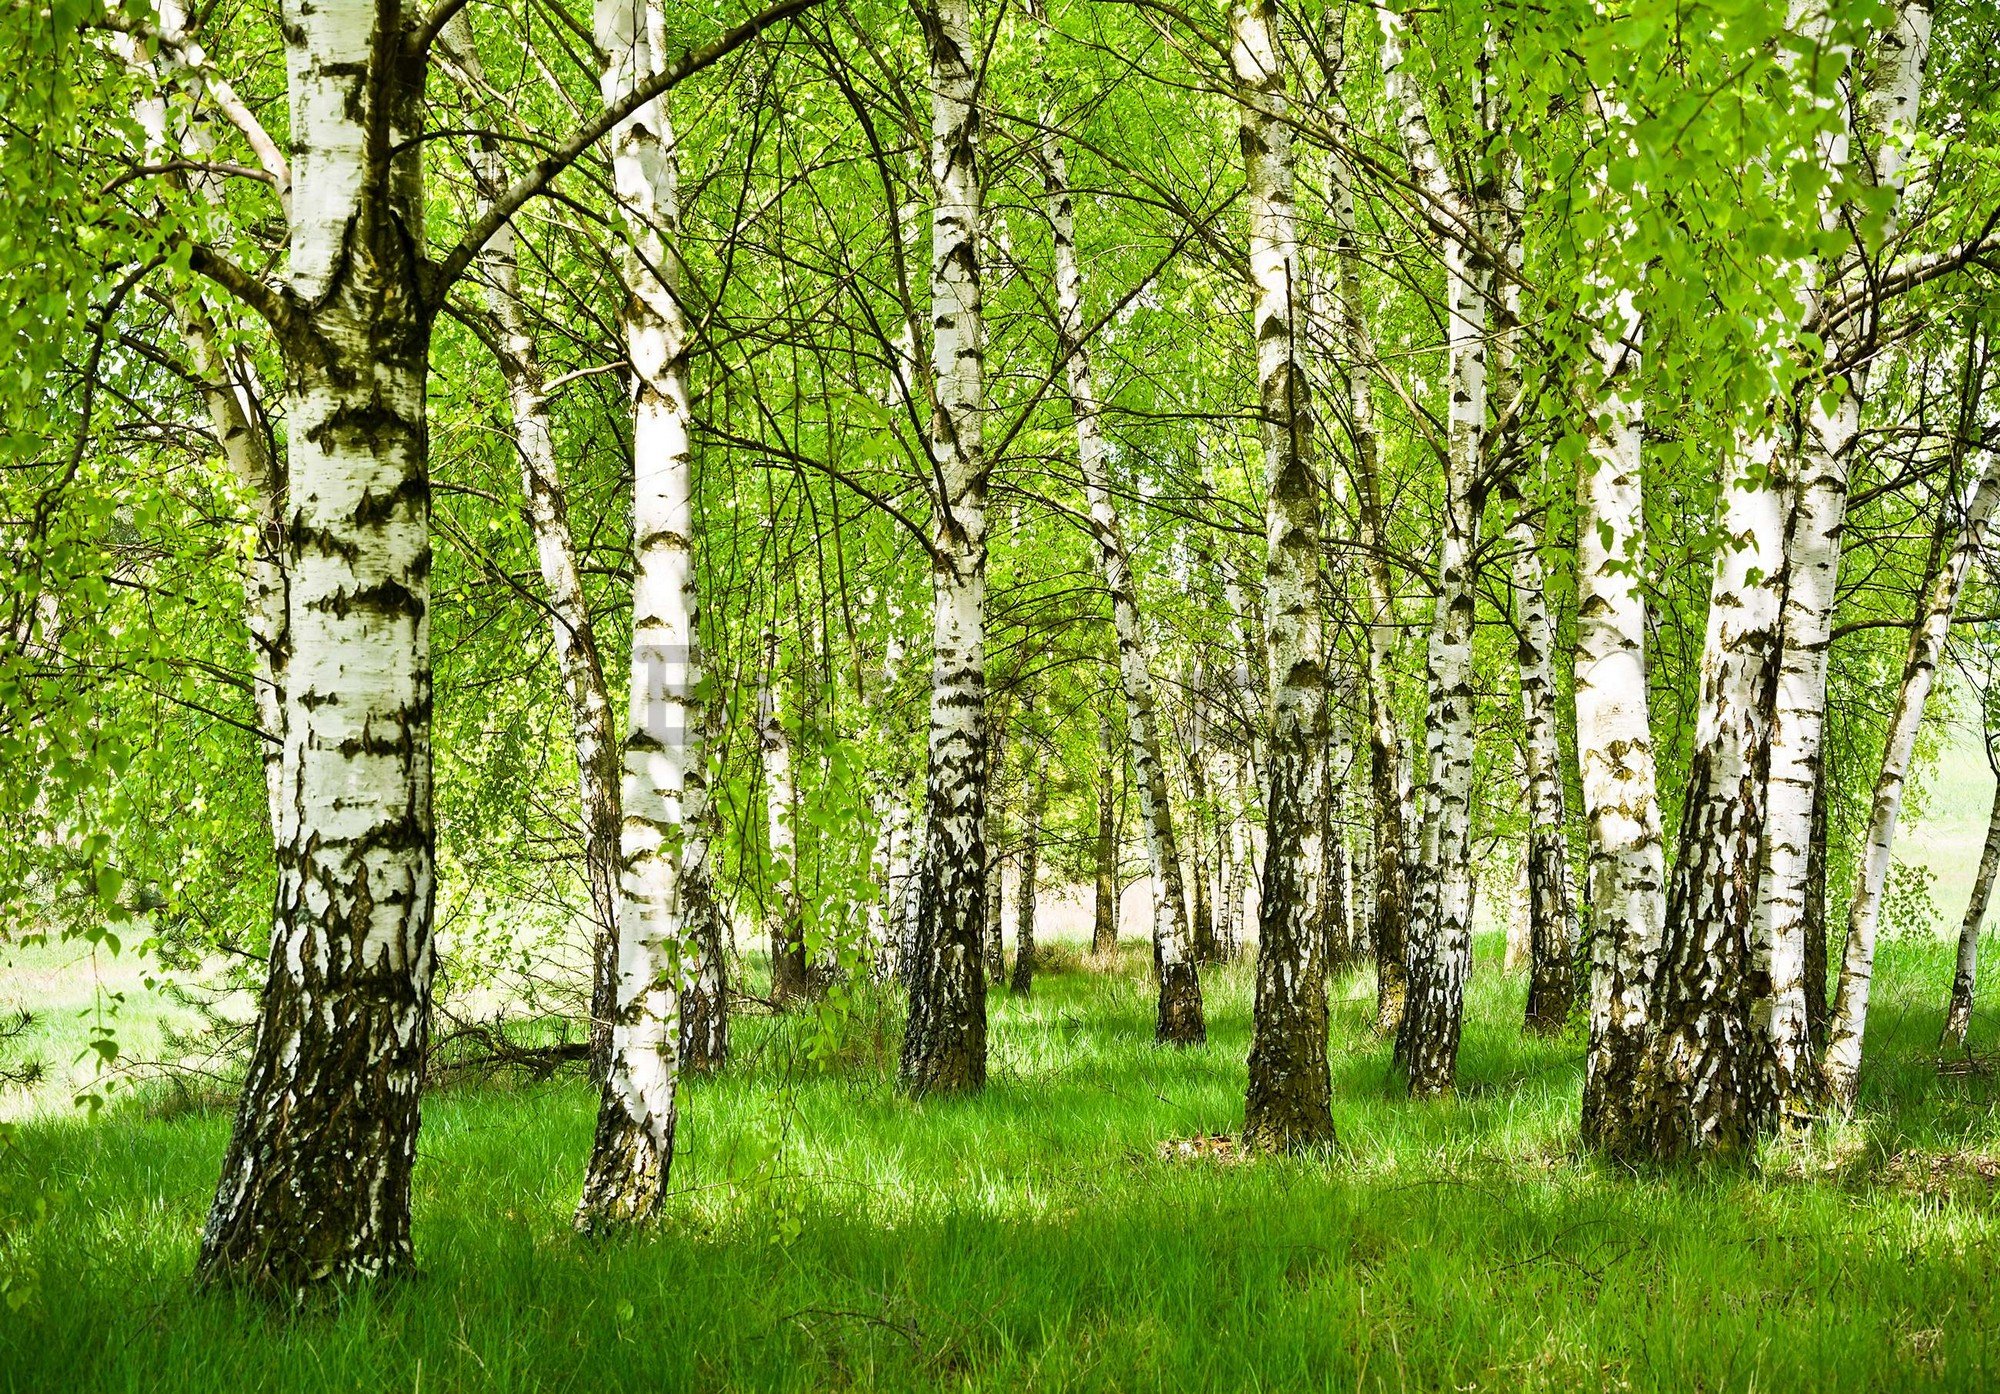 Fototapet vlies: Pădurea de mesteacăn - 416x254 cm